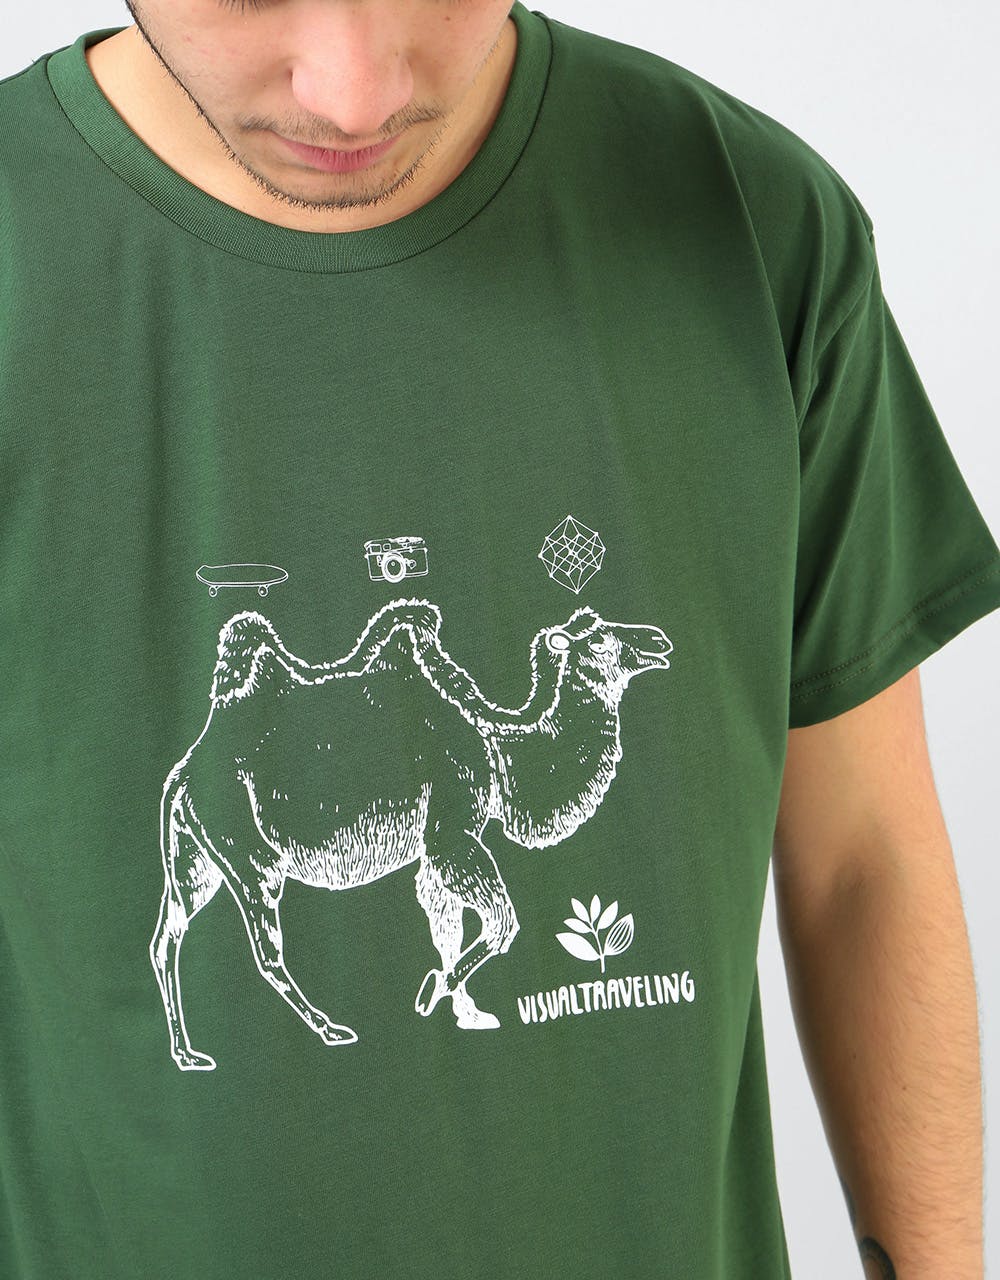 Magenta Camel T-Shirt - Green